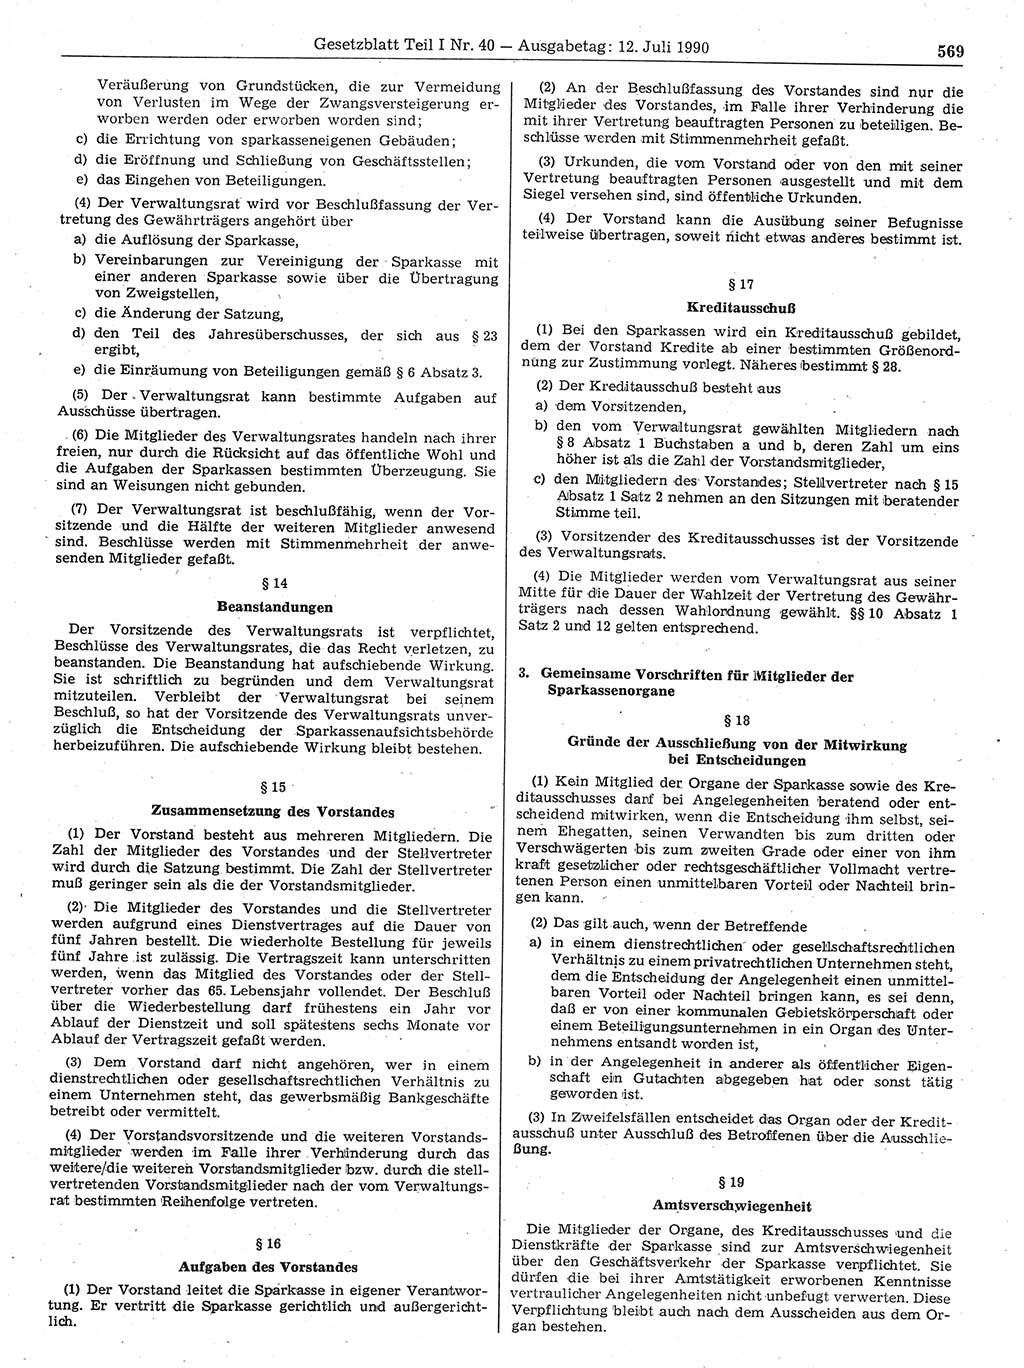 Gesetzblatt (GBl.) der Deutschen Demokratischen Republik (DDR) Teil Ⅰ 1990, Seite 569 (GBl. DDR Ⅰ 1990, S. 569)